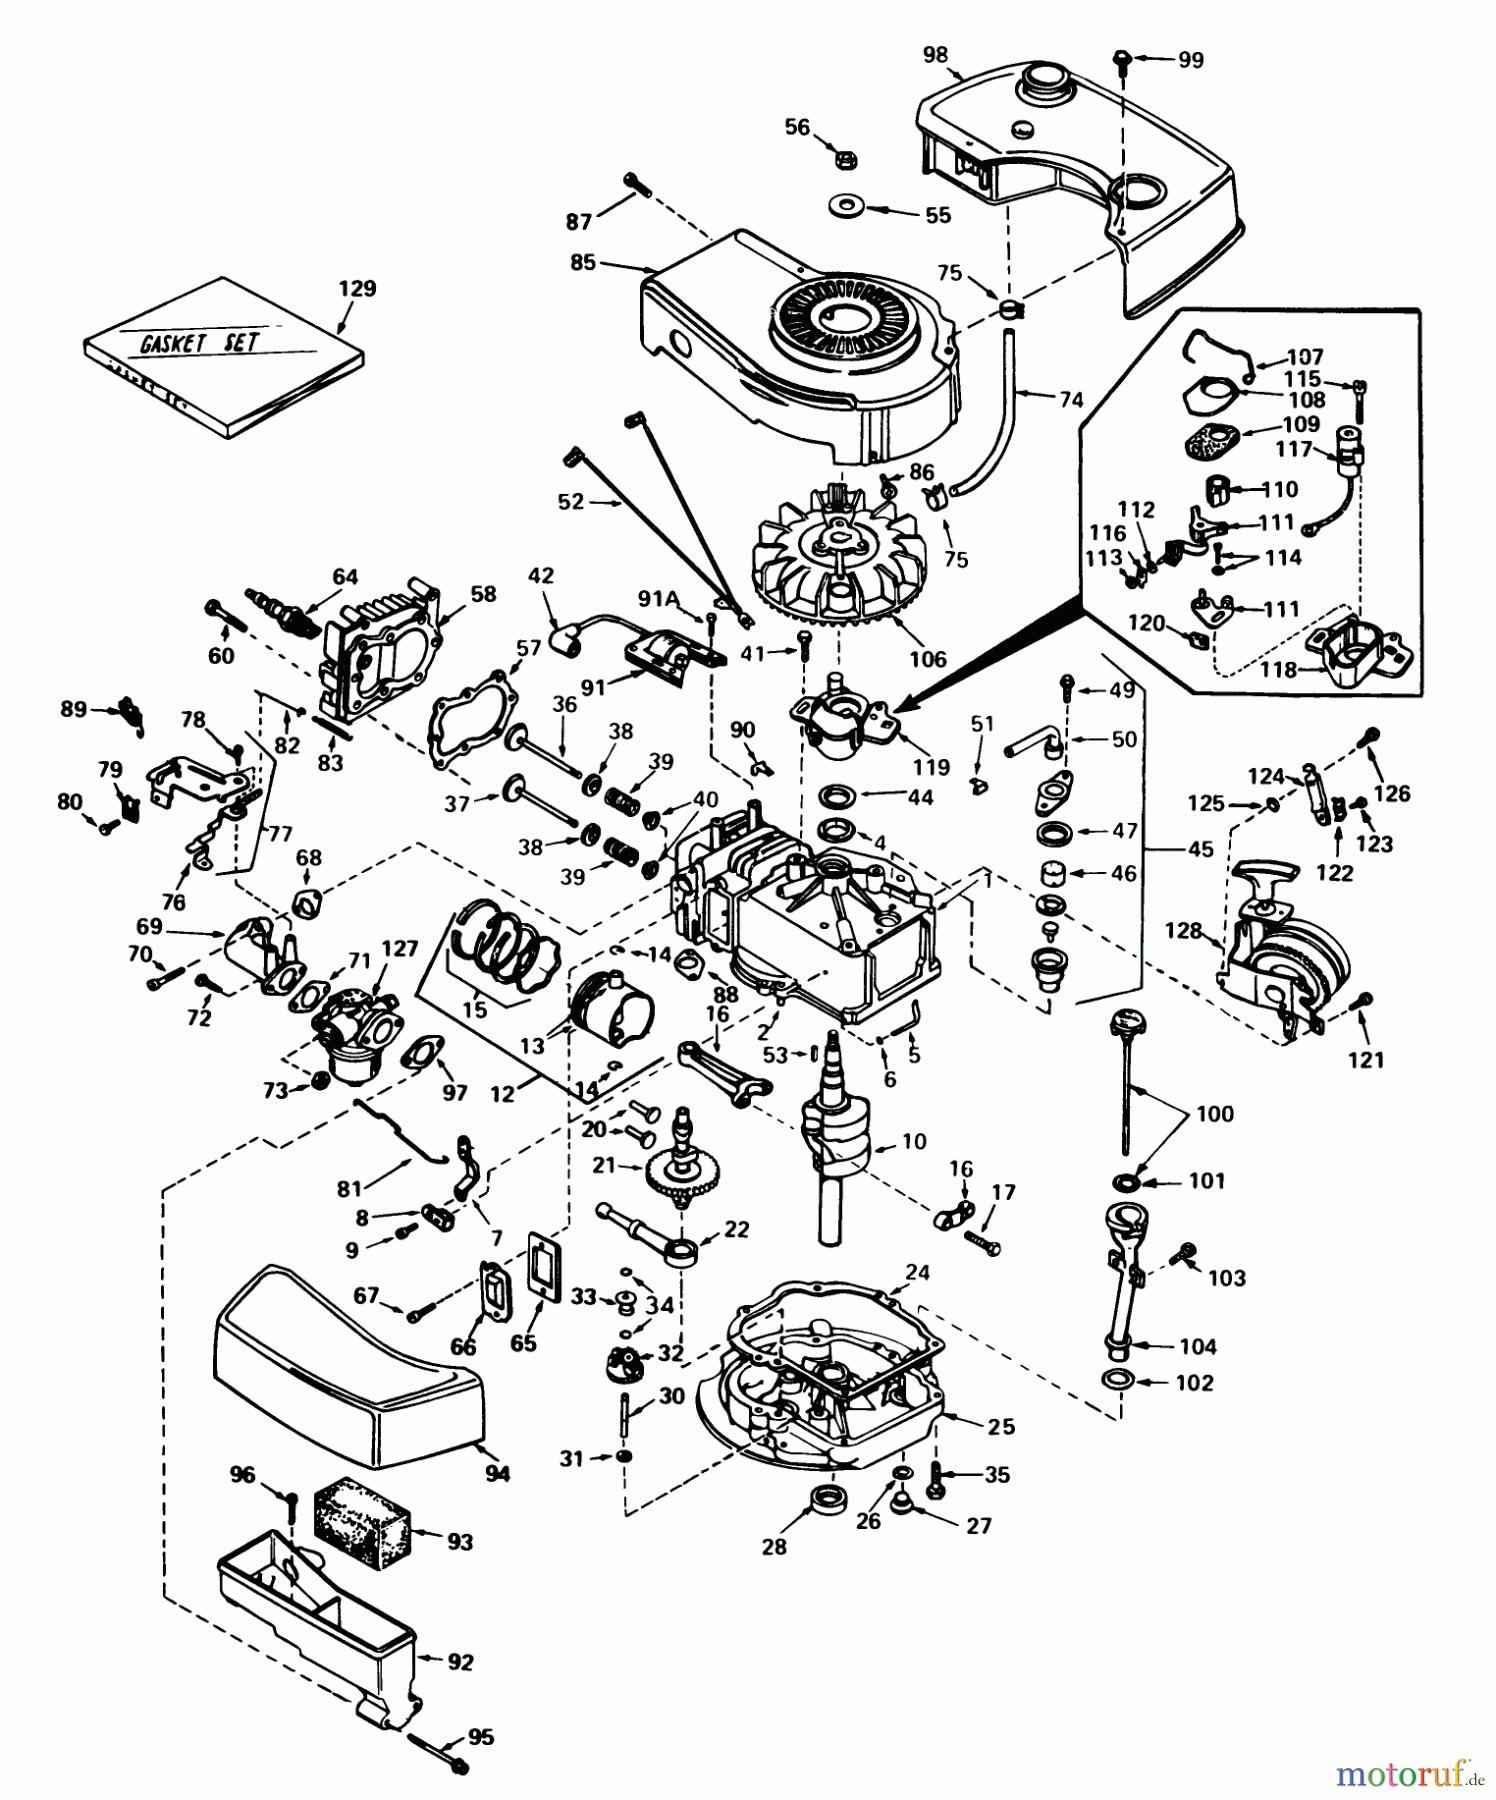  Toro Neu Mowers, Walk-Behind Seite 1 16077 - Toro Lawnmower, 1980 (0000001-0999999) ENGINE TECUMSEH MODEL NO. TNT 100-10071C